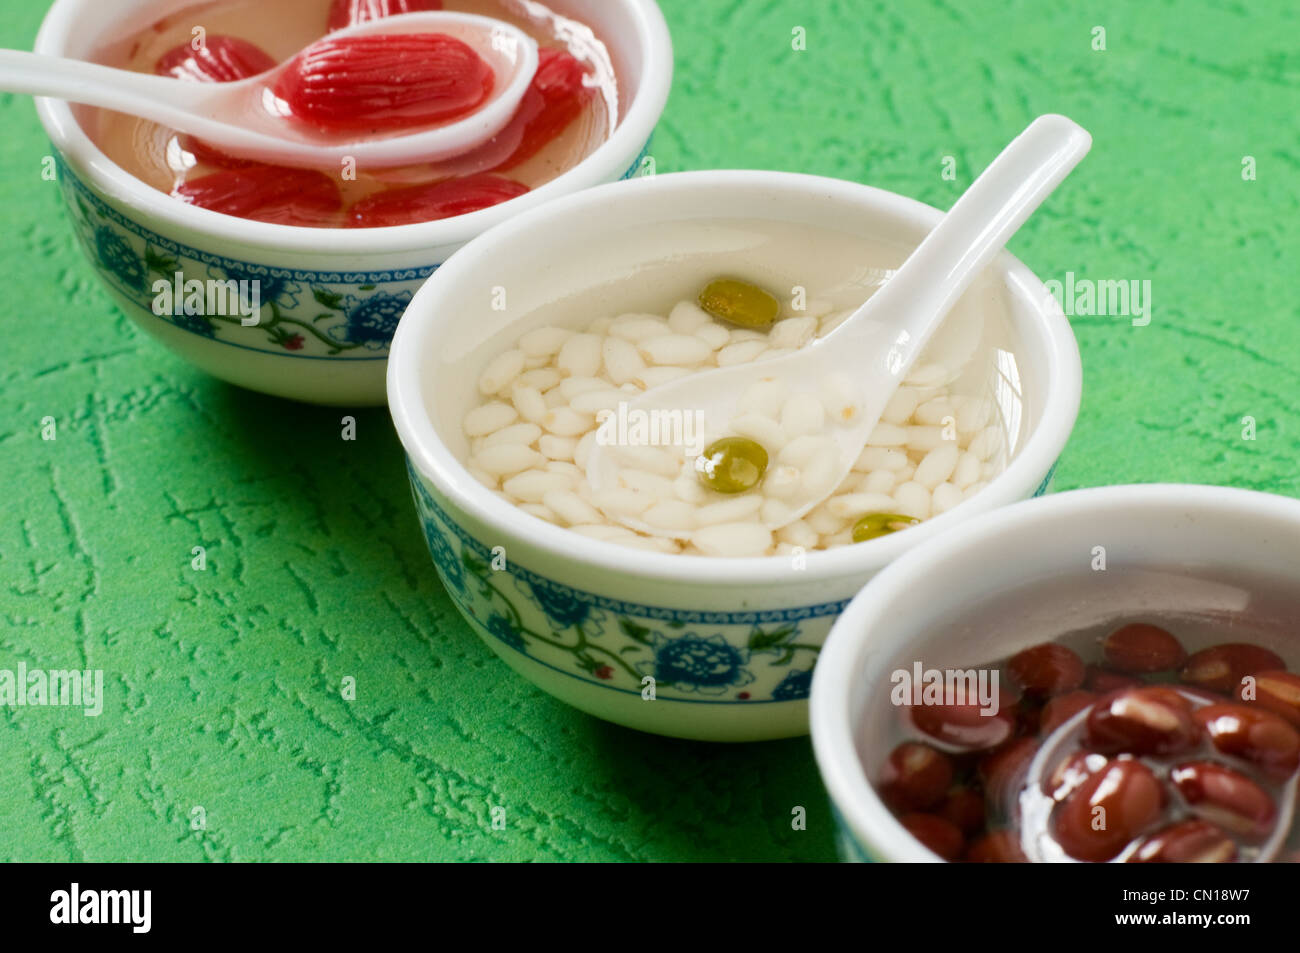 Miniatur-chinesische Küche-Kühlschrank-Magnete Stockfoto